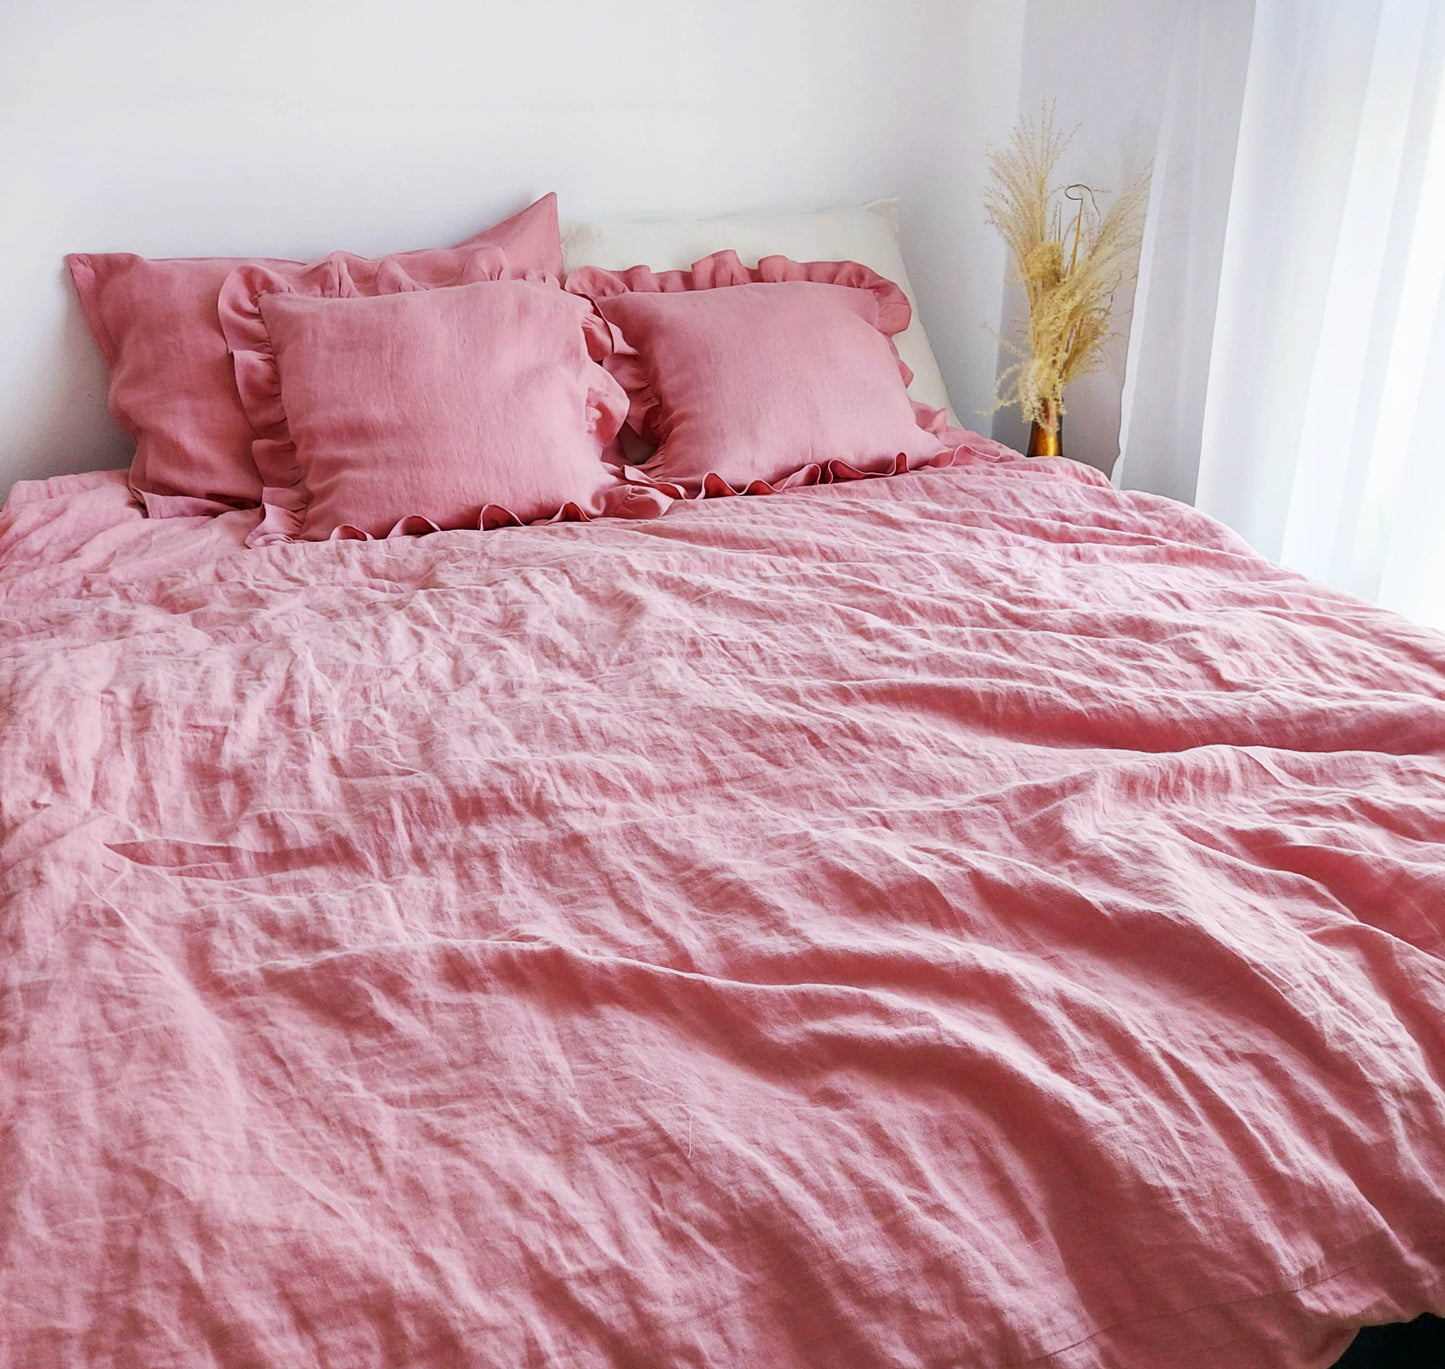 Linen Bedding Set in Vintage Pink Color, Stonewashed Linen